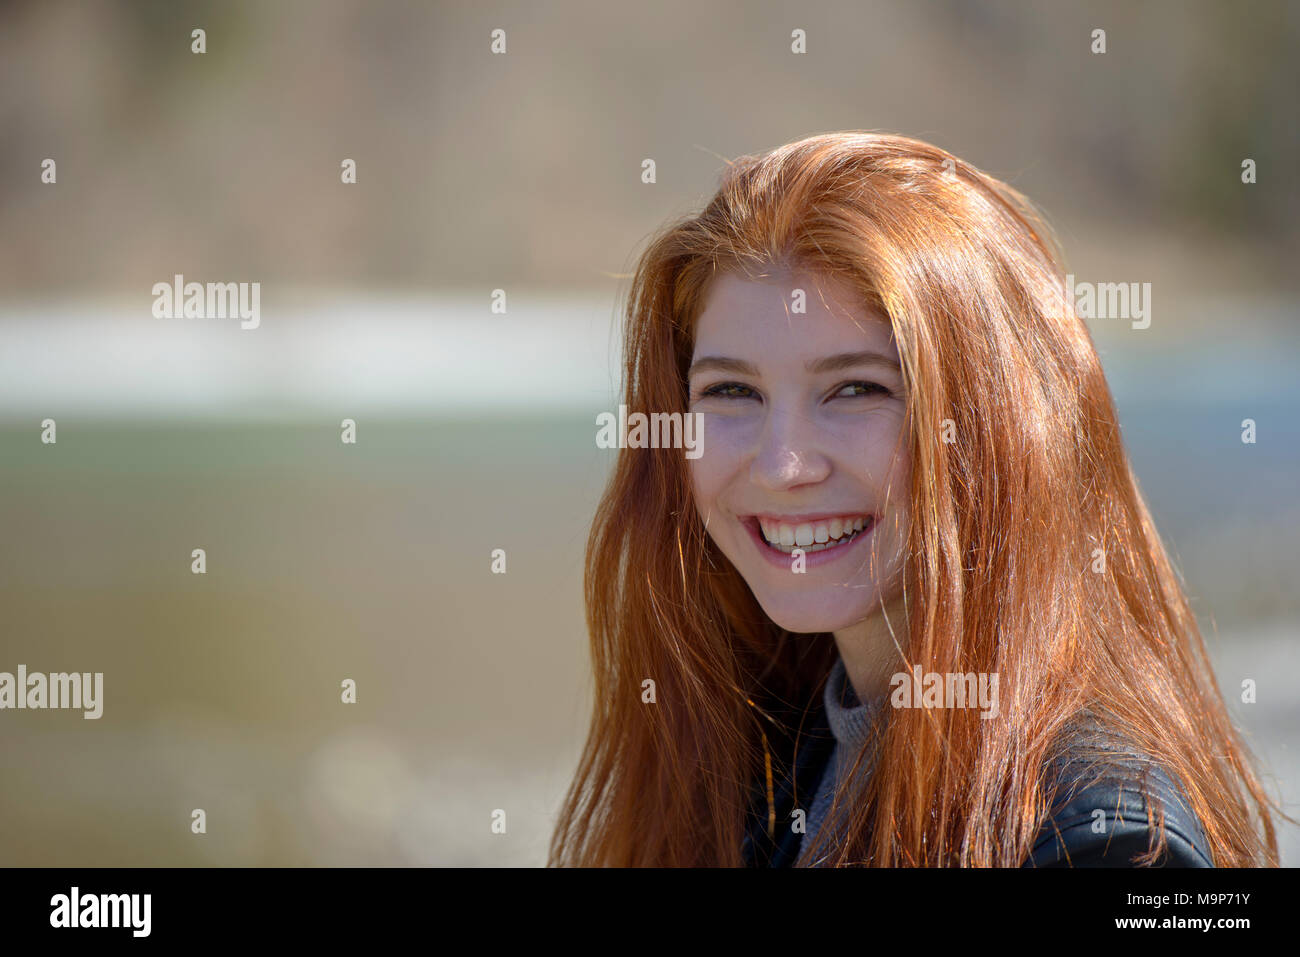 Portrait, jeune femme, jeune fille, adolescente avec de longs cheveux rouges, Bavière, Allemagne Banque D'Images